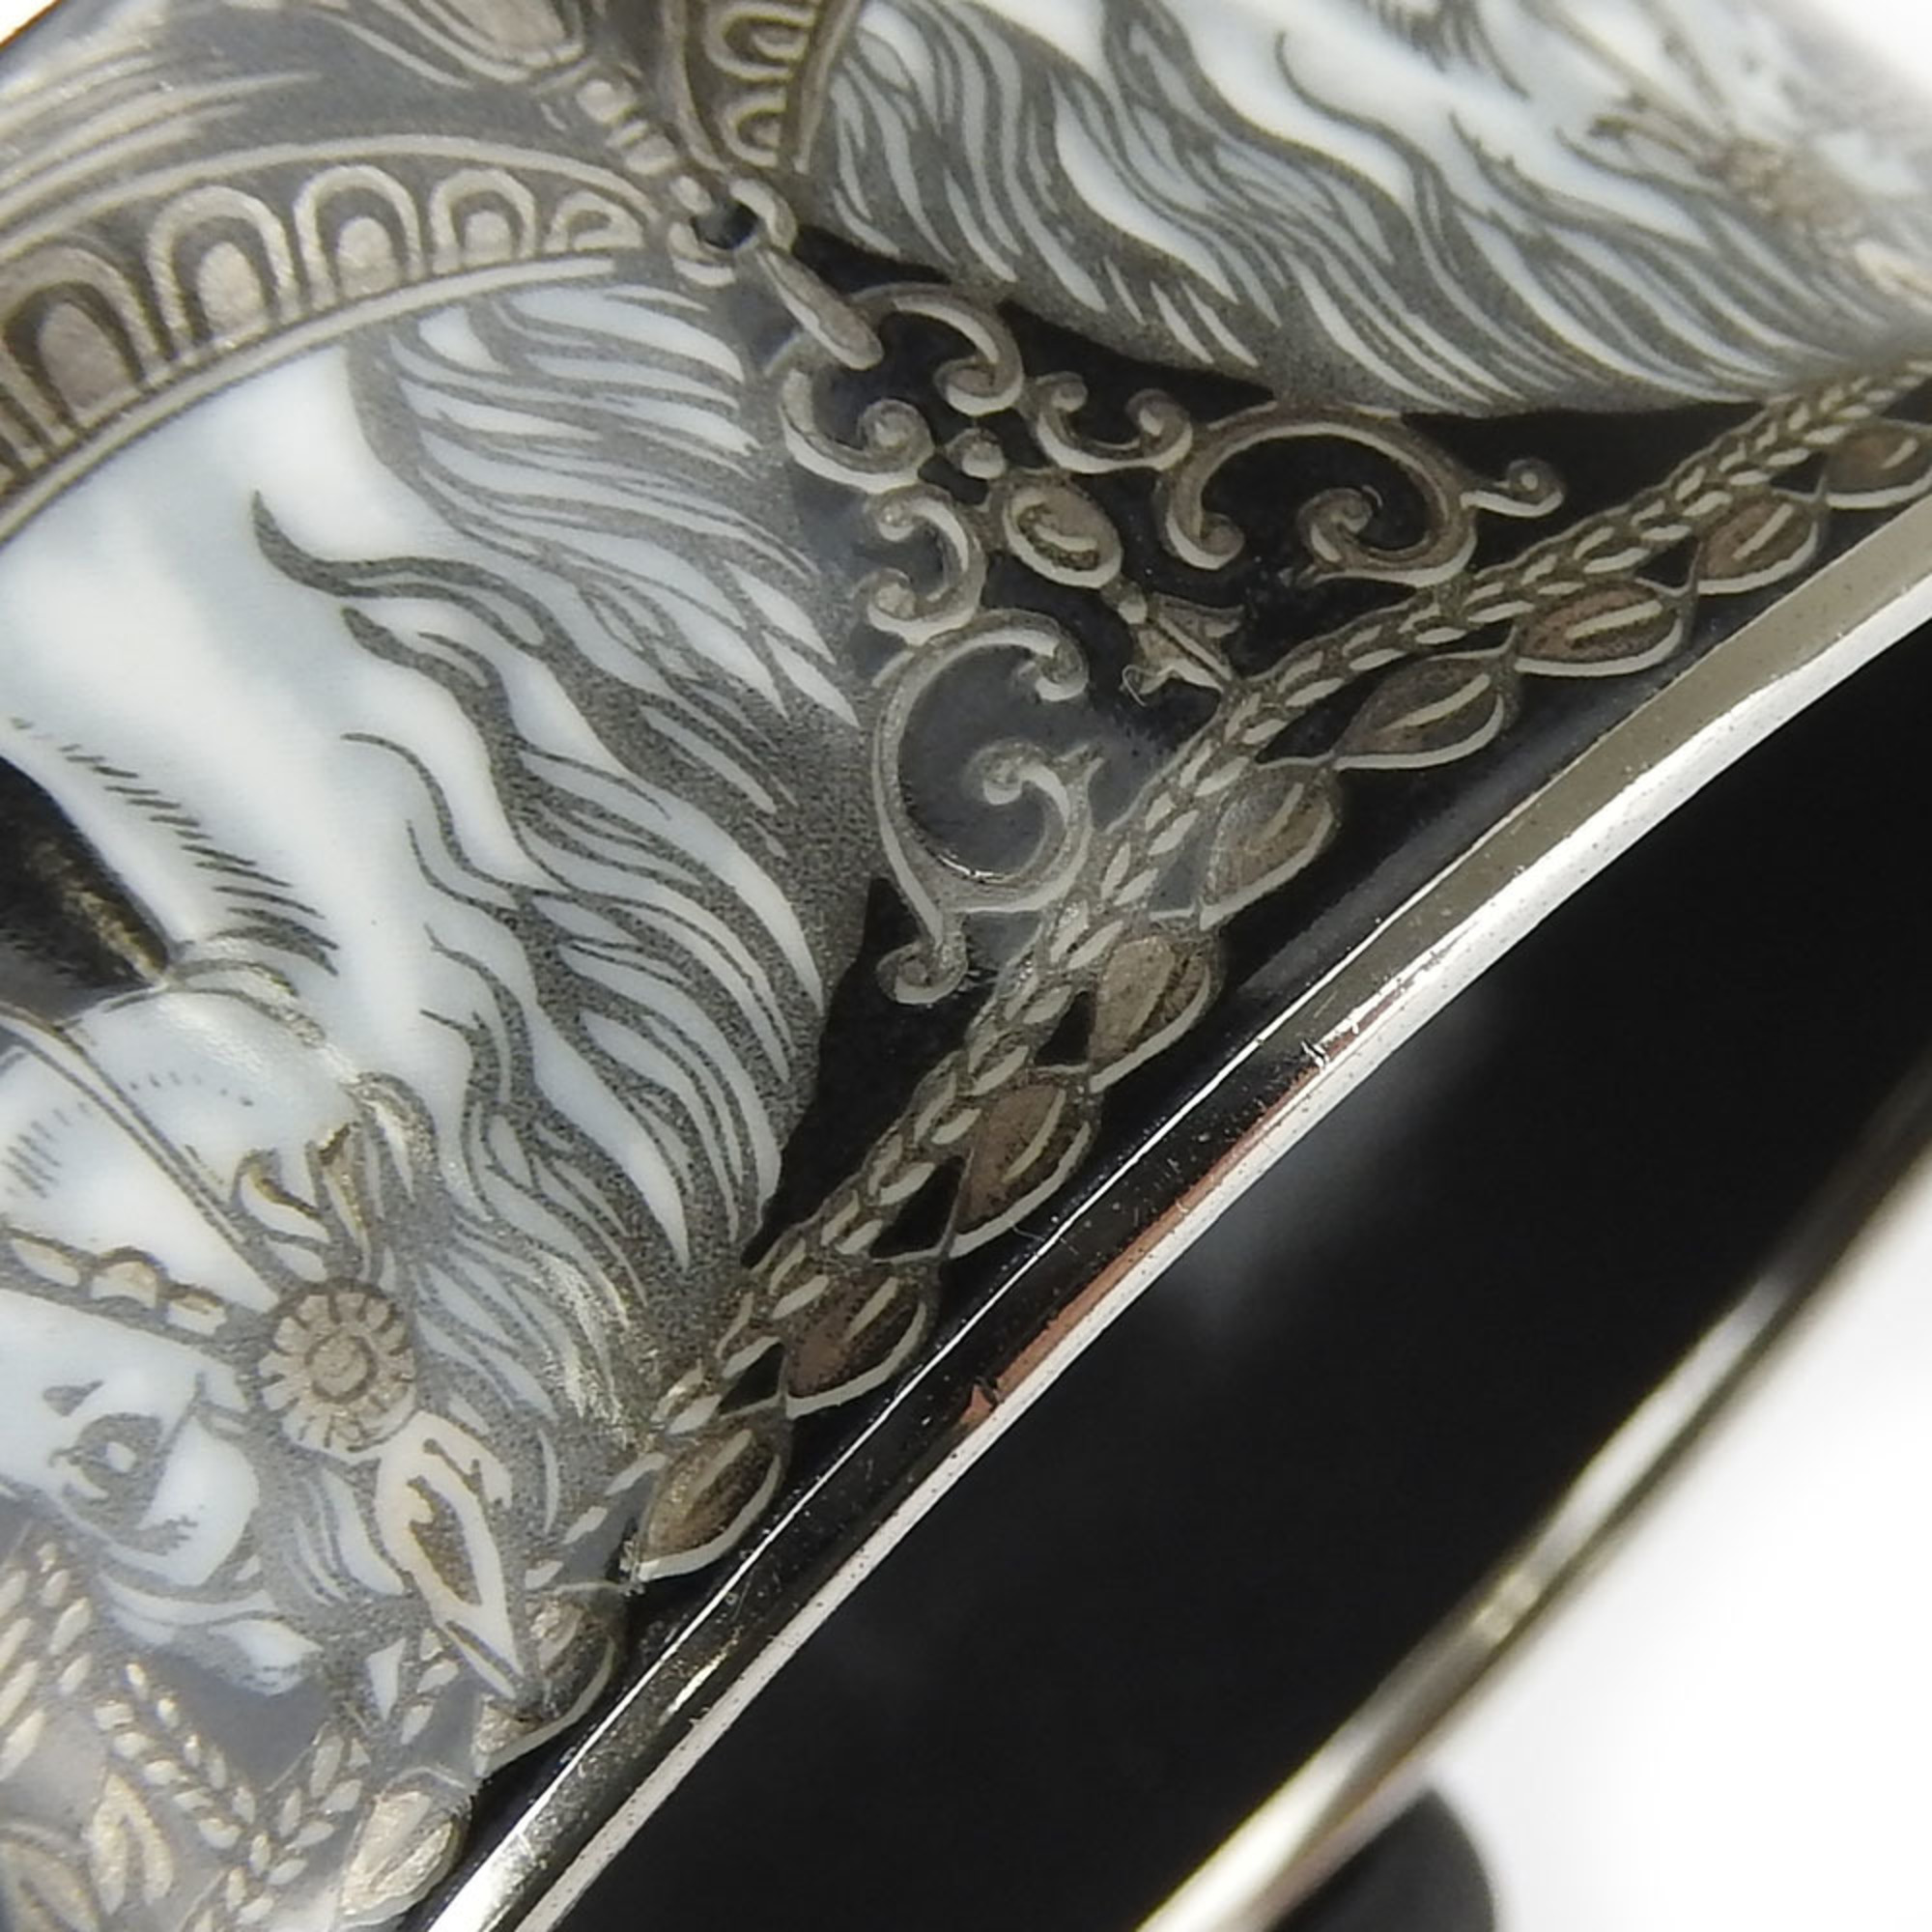 Hermes bracelet enamel metal cloisonné black horse women's HERMES